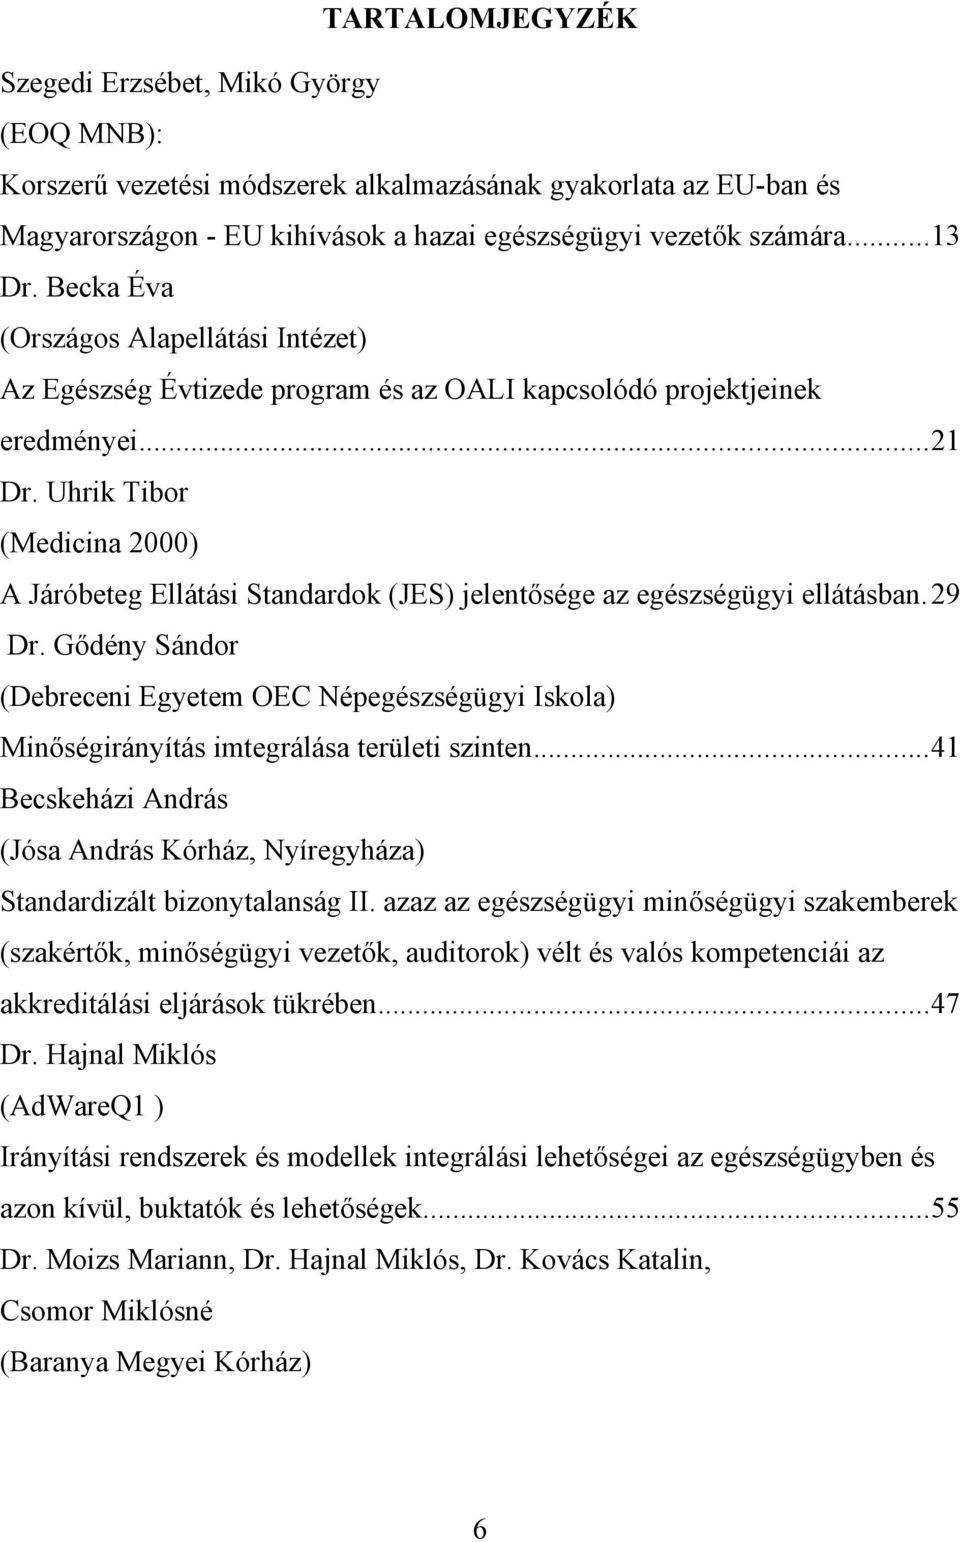 Uhrik Tibor (Medicina 2000) A Járóbeteg Ellátási Standardok (JES) jelentősége az egészségügyi ellátásban.29 Dr.